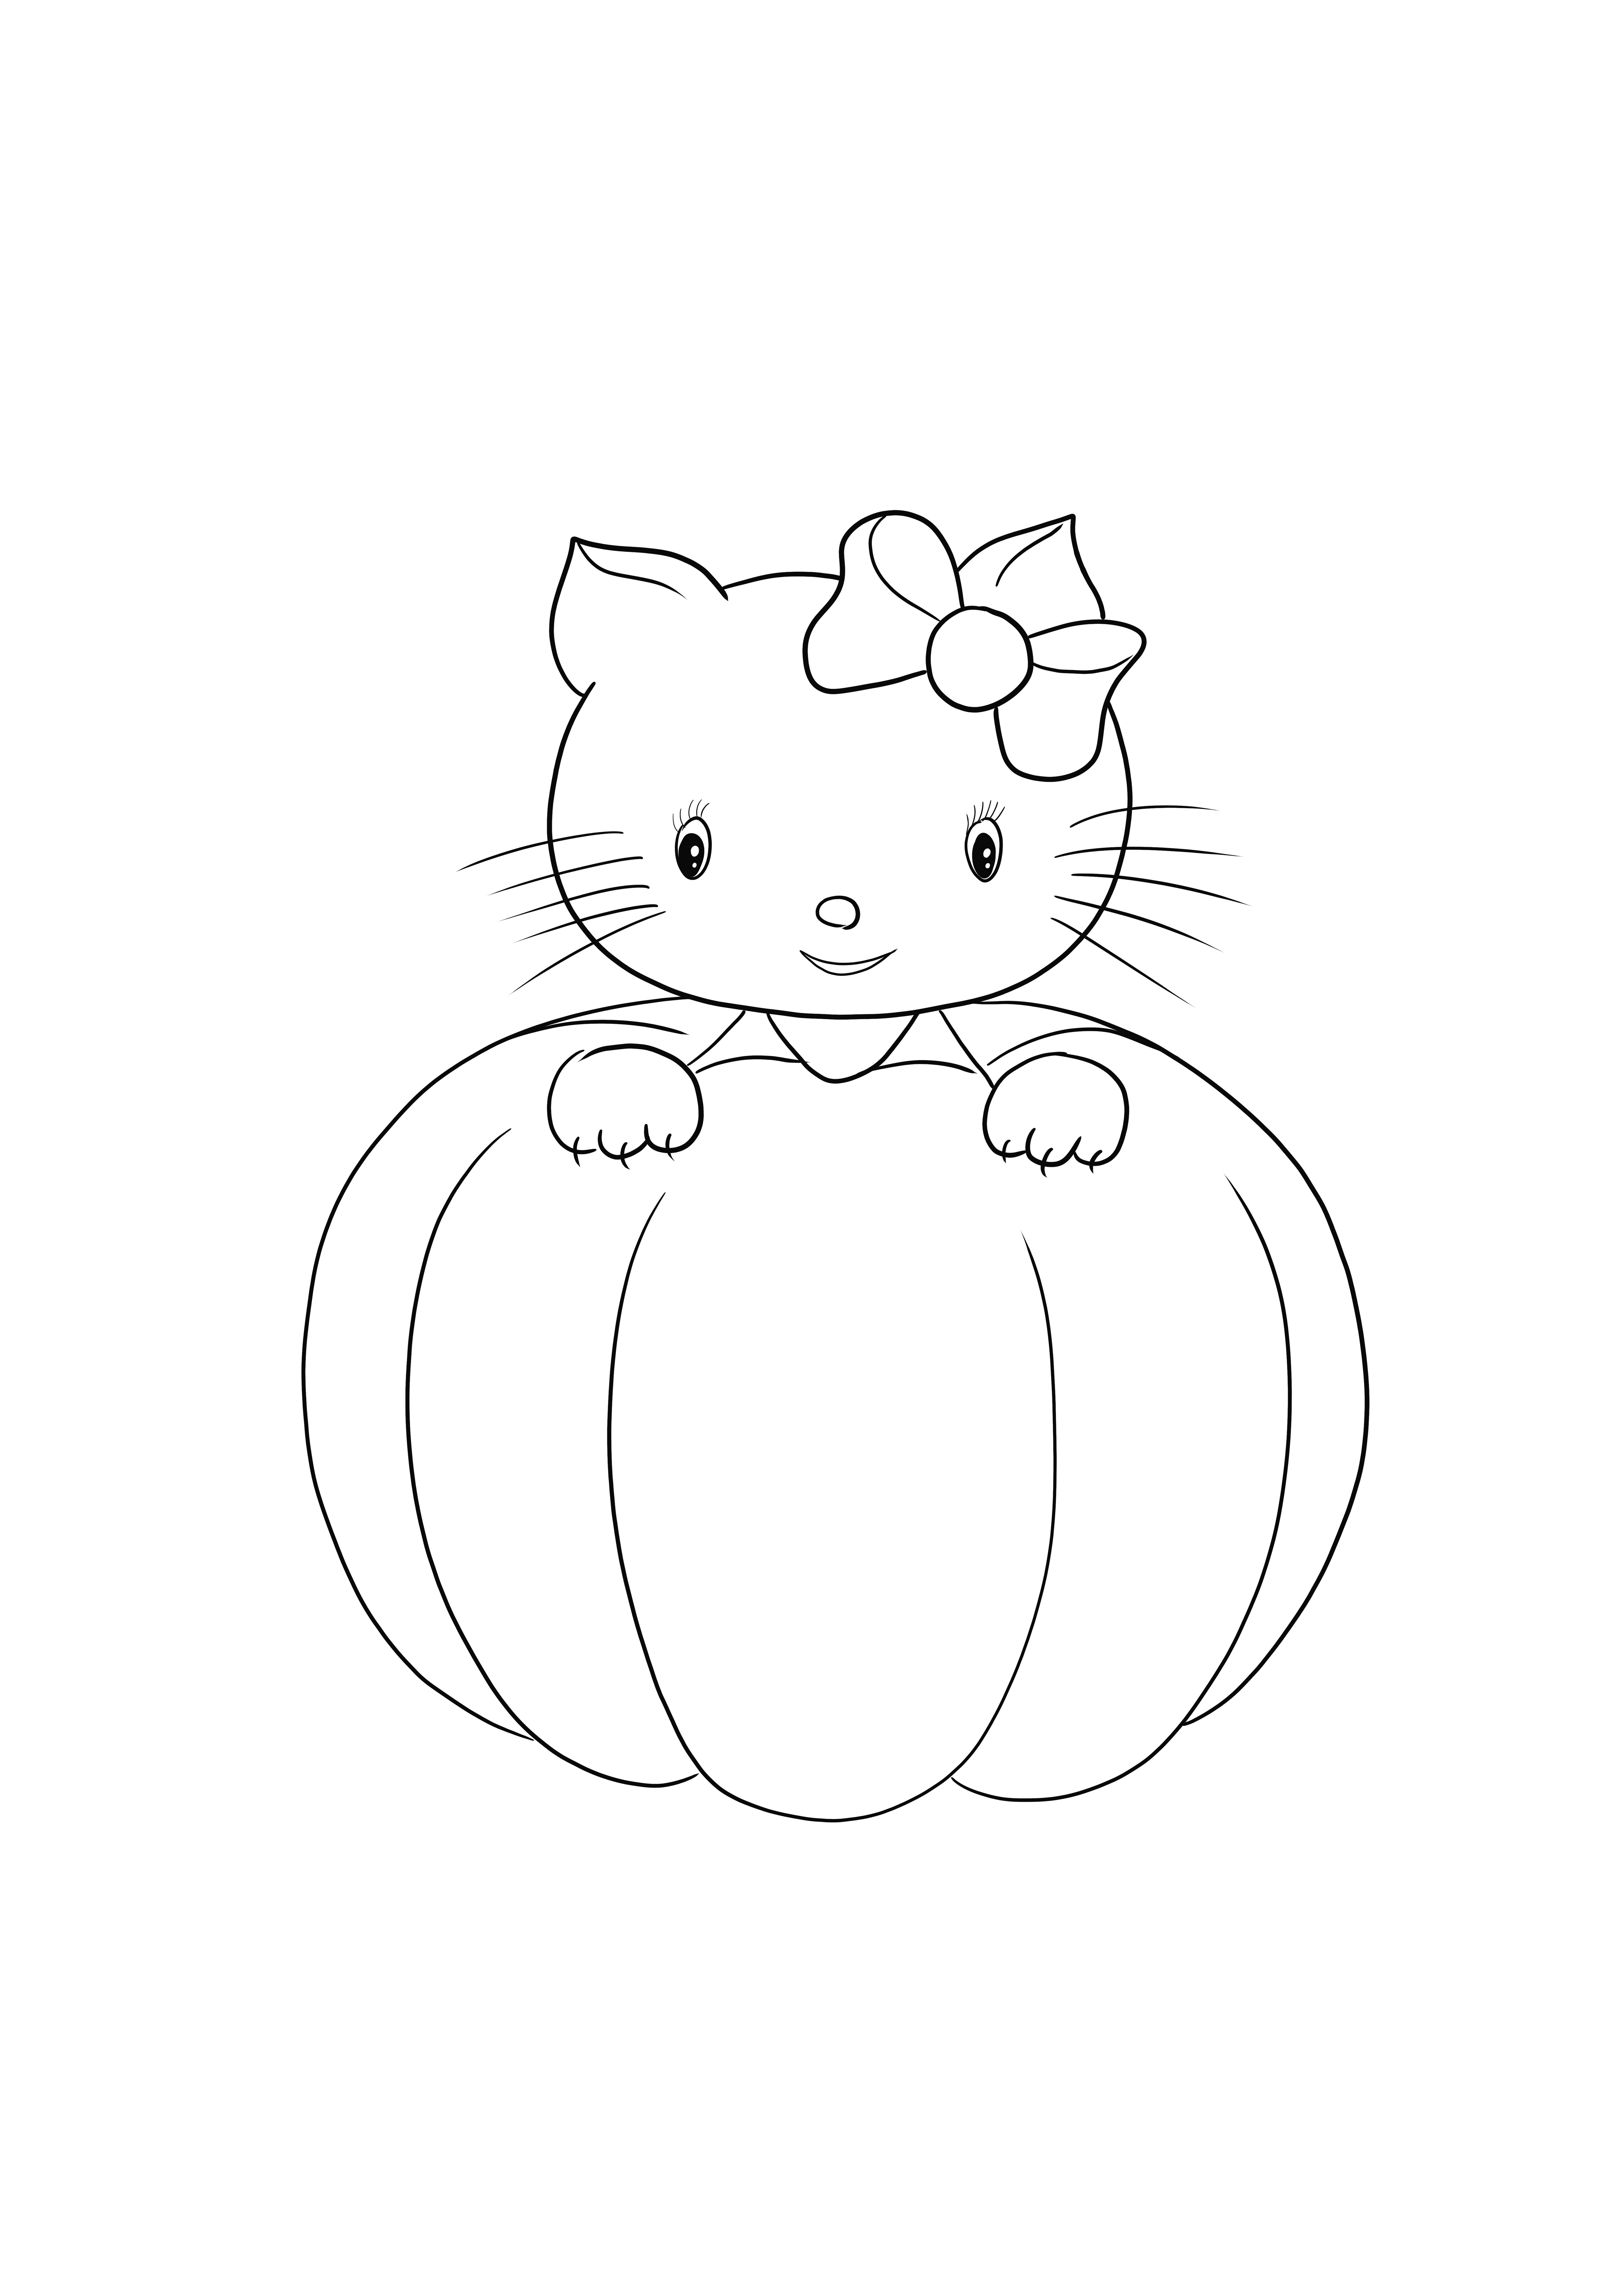 Hello Kitty Halloween è semplice e gratuito per colorare l'immagine o salvarla per dopo